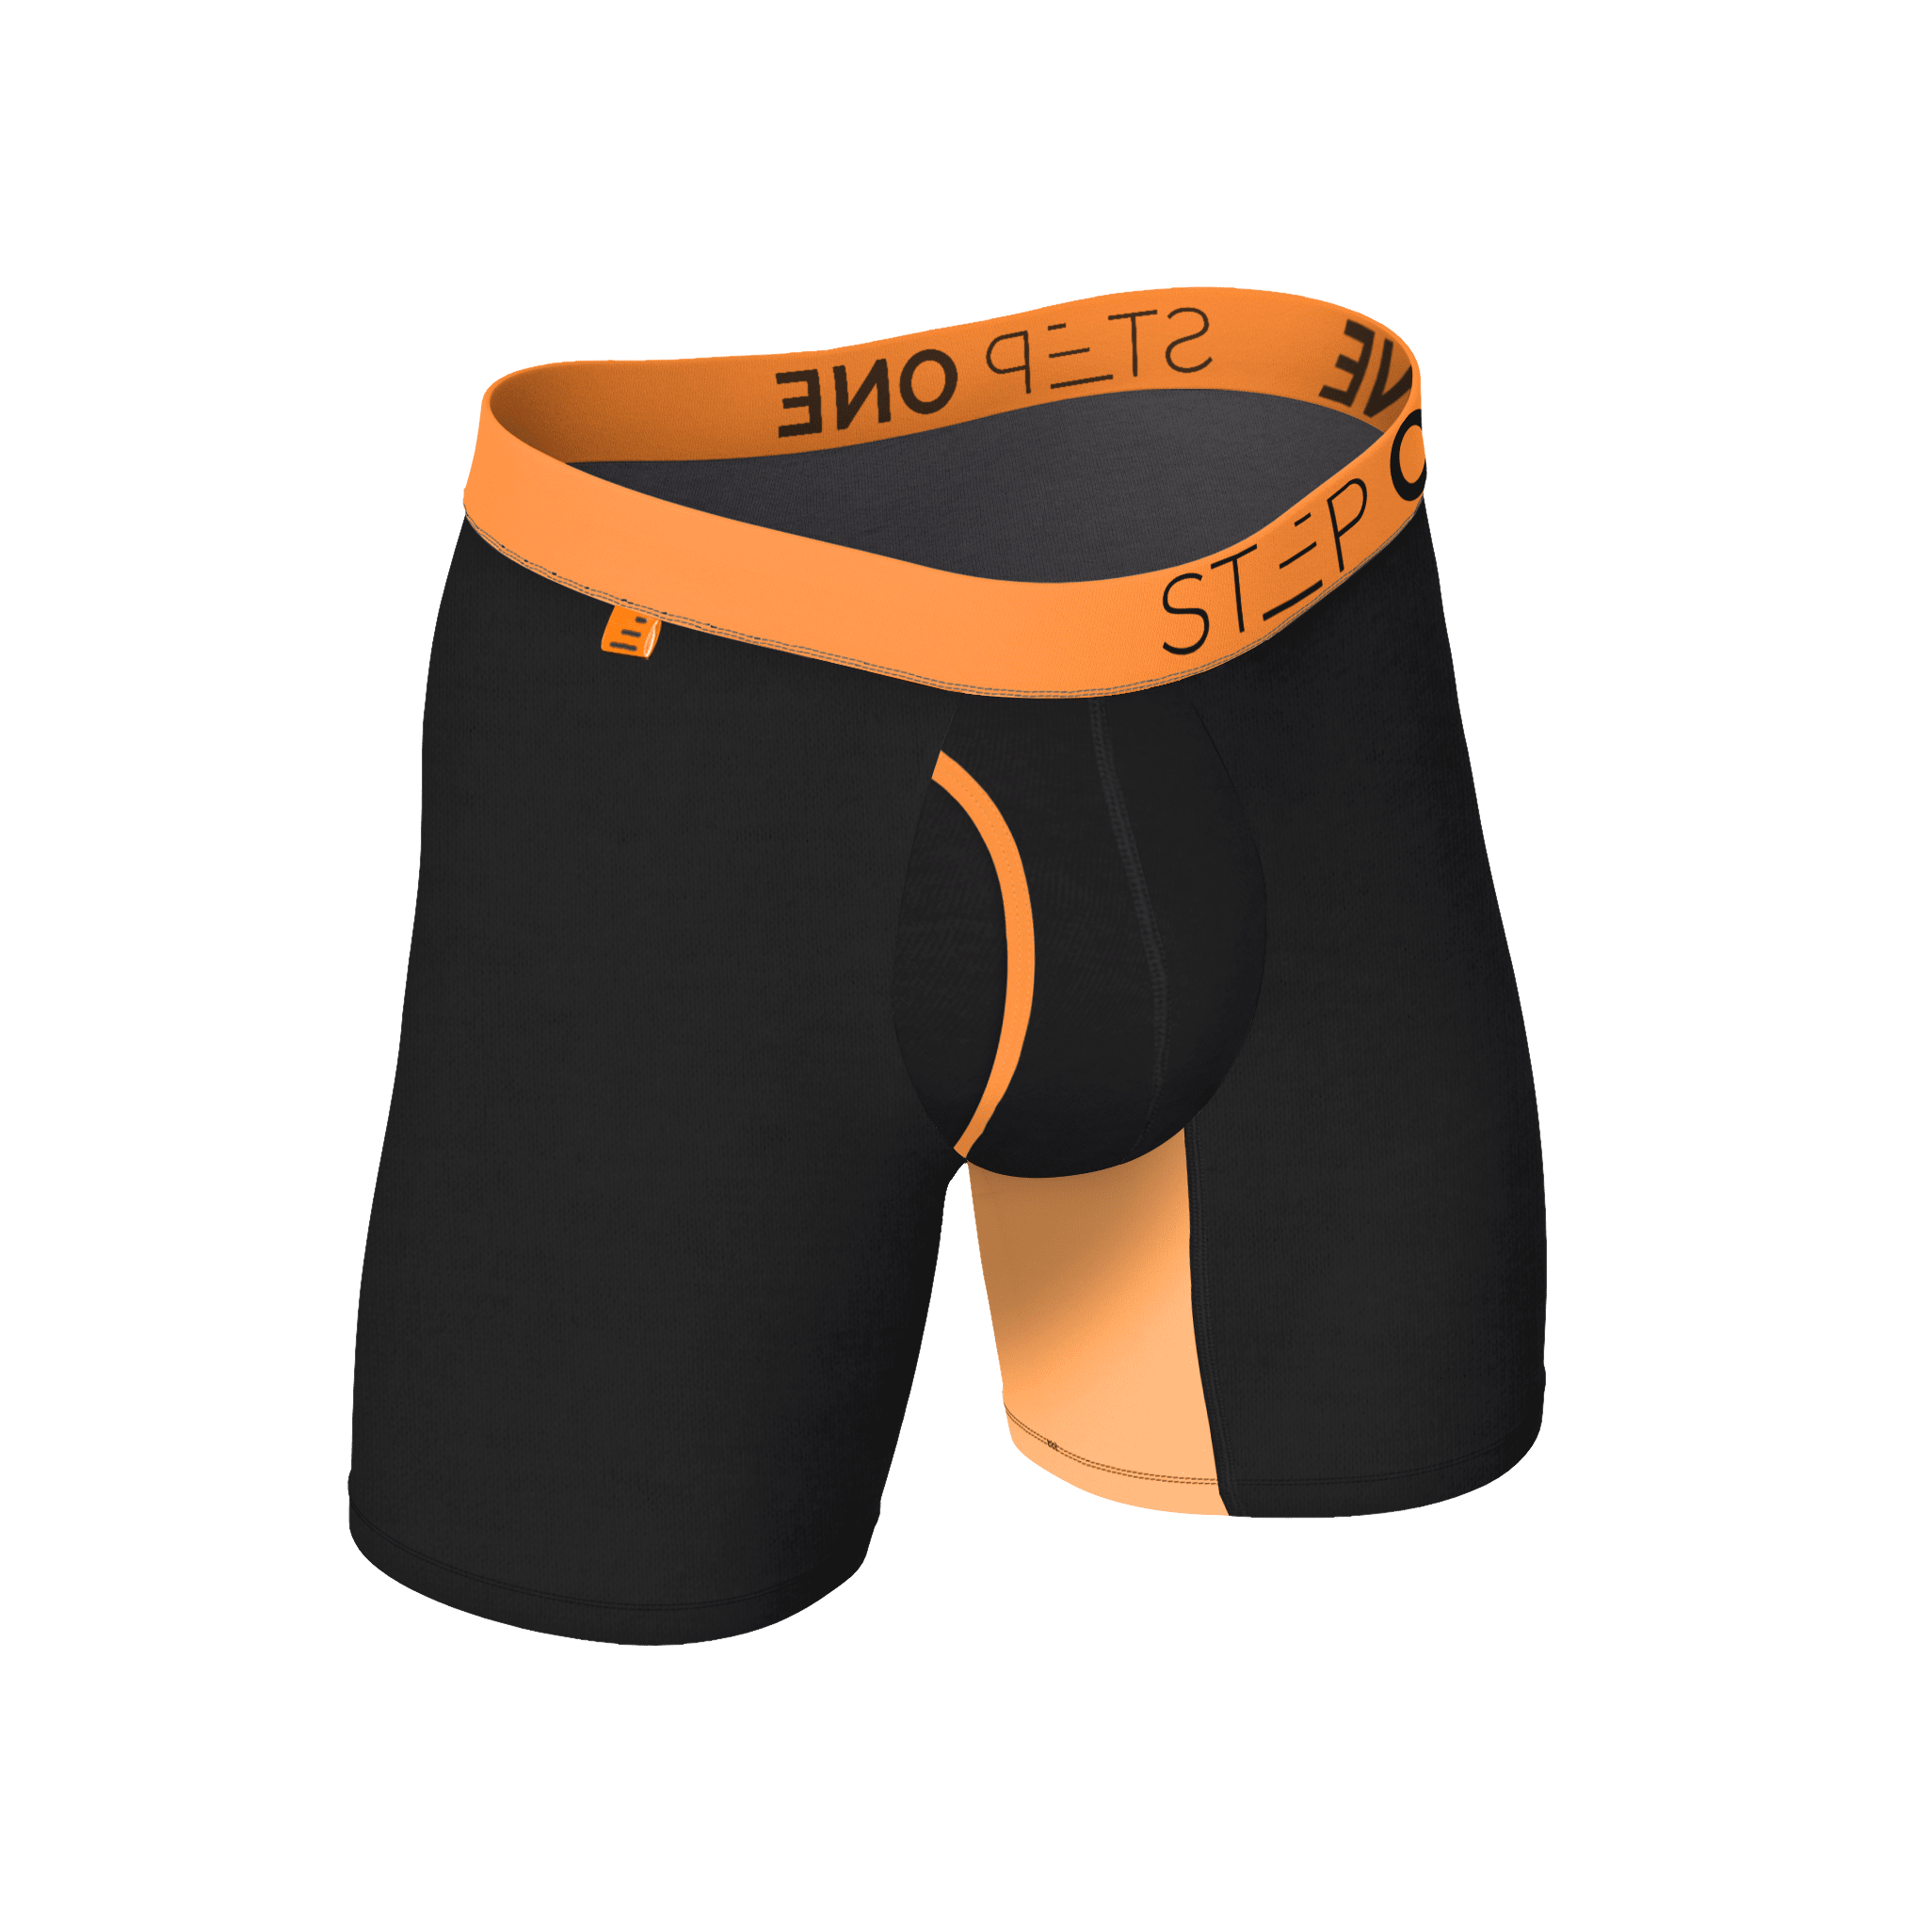 Boxer Brief Fly - Infernos | Step One Underwear